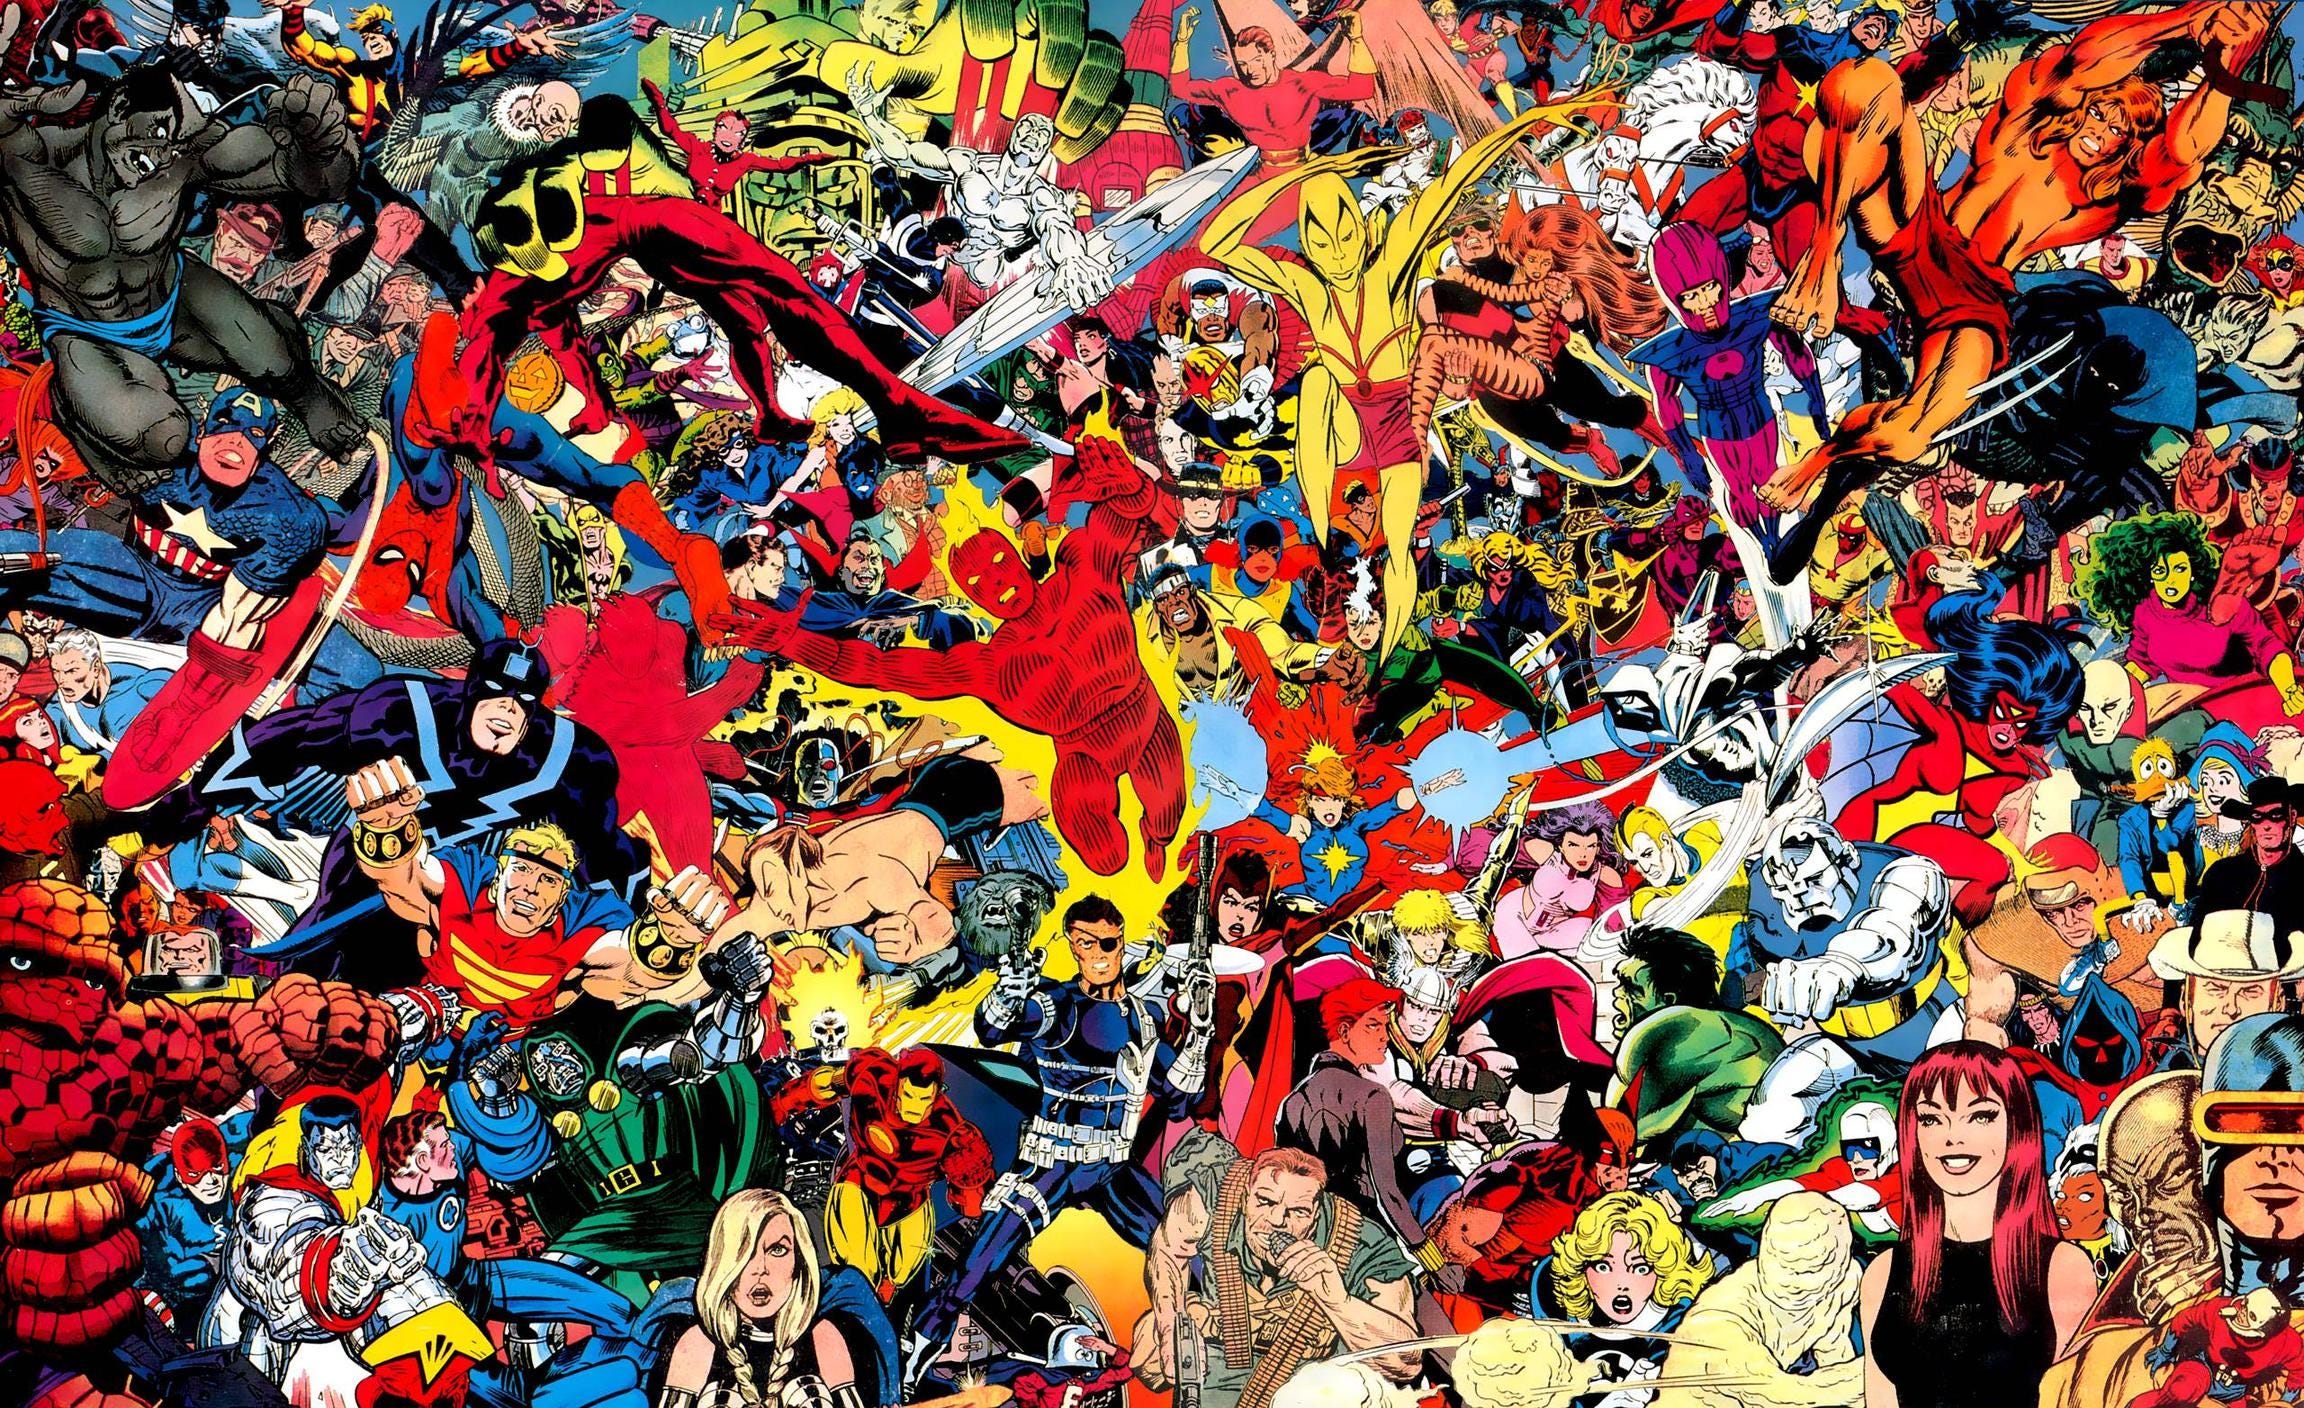 As Marvels' “é exatamente o que um filme de quadrinhos deveria ser